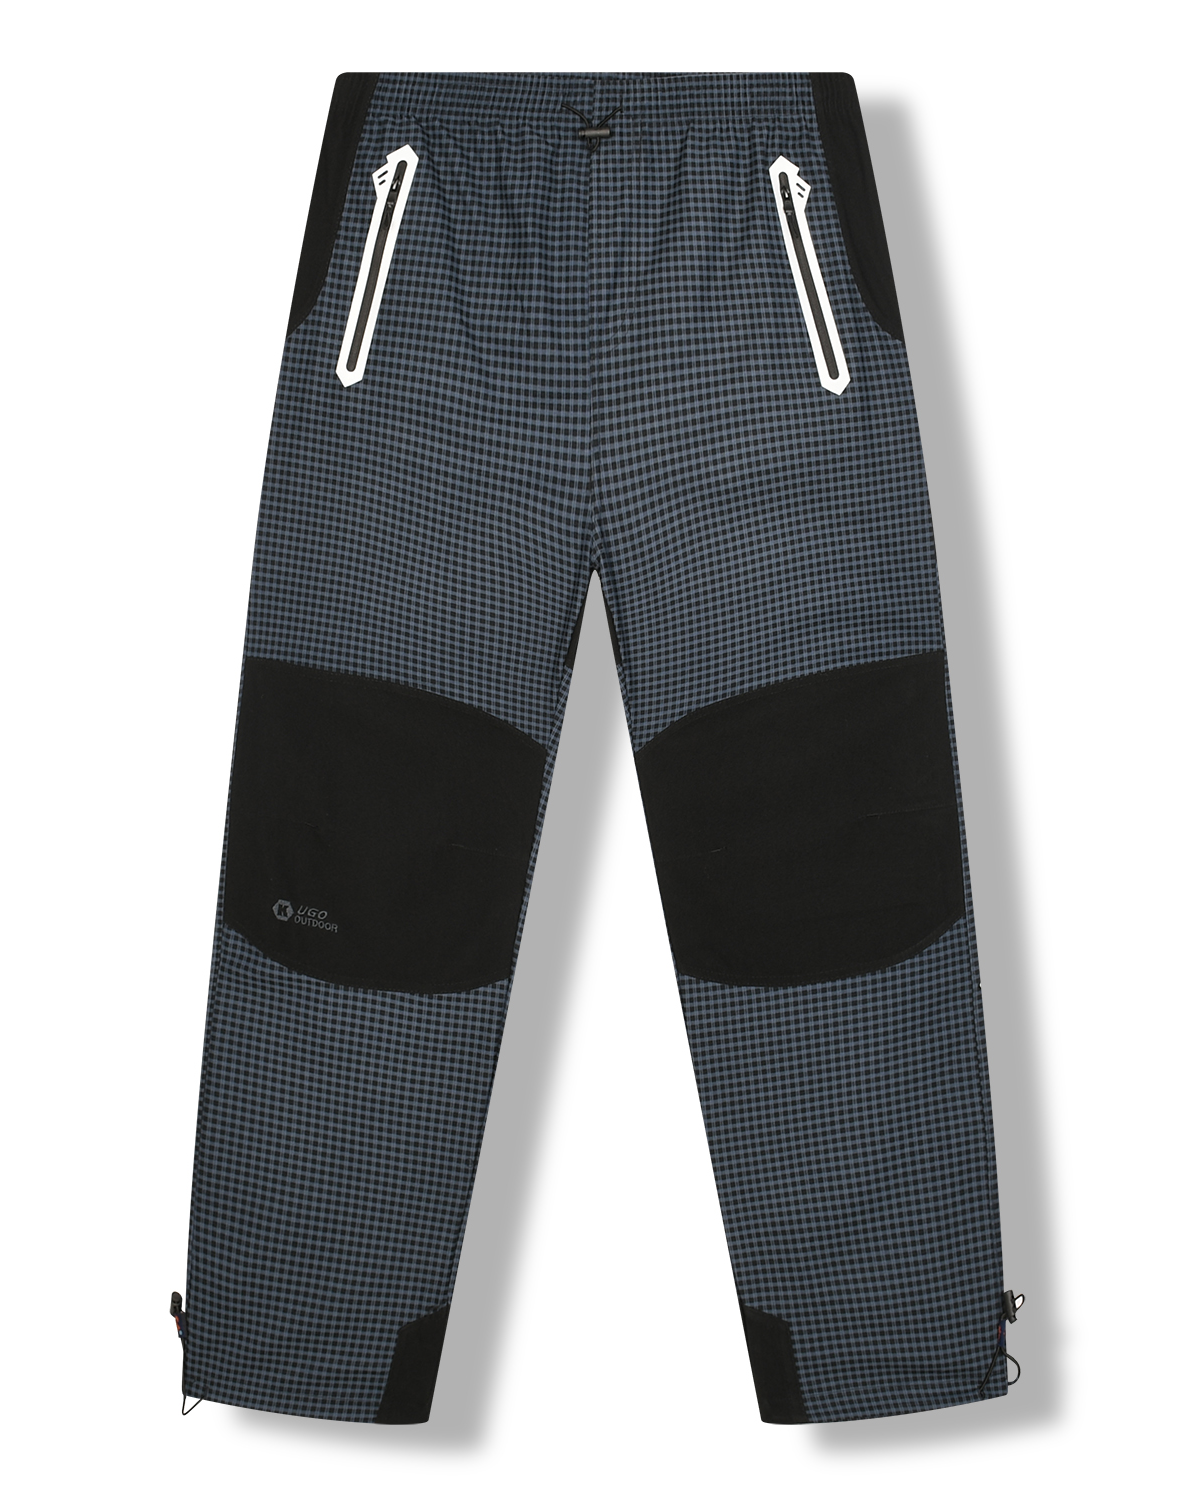 Pánské outdoorové kalhoty - KUGO G8555, šedomodrá Barva: Šedá, Velikost: 3XL